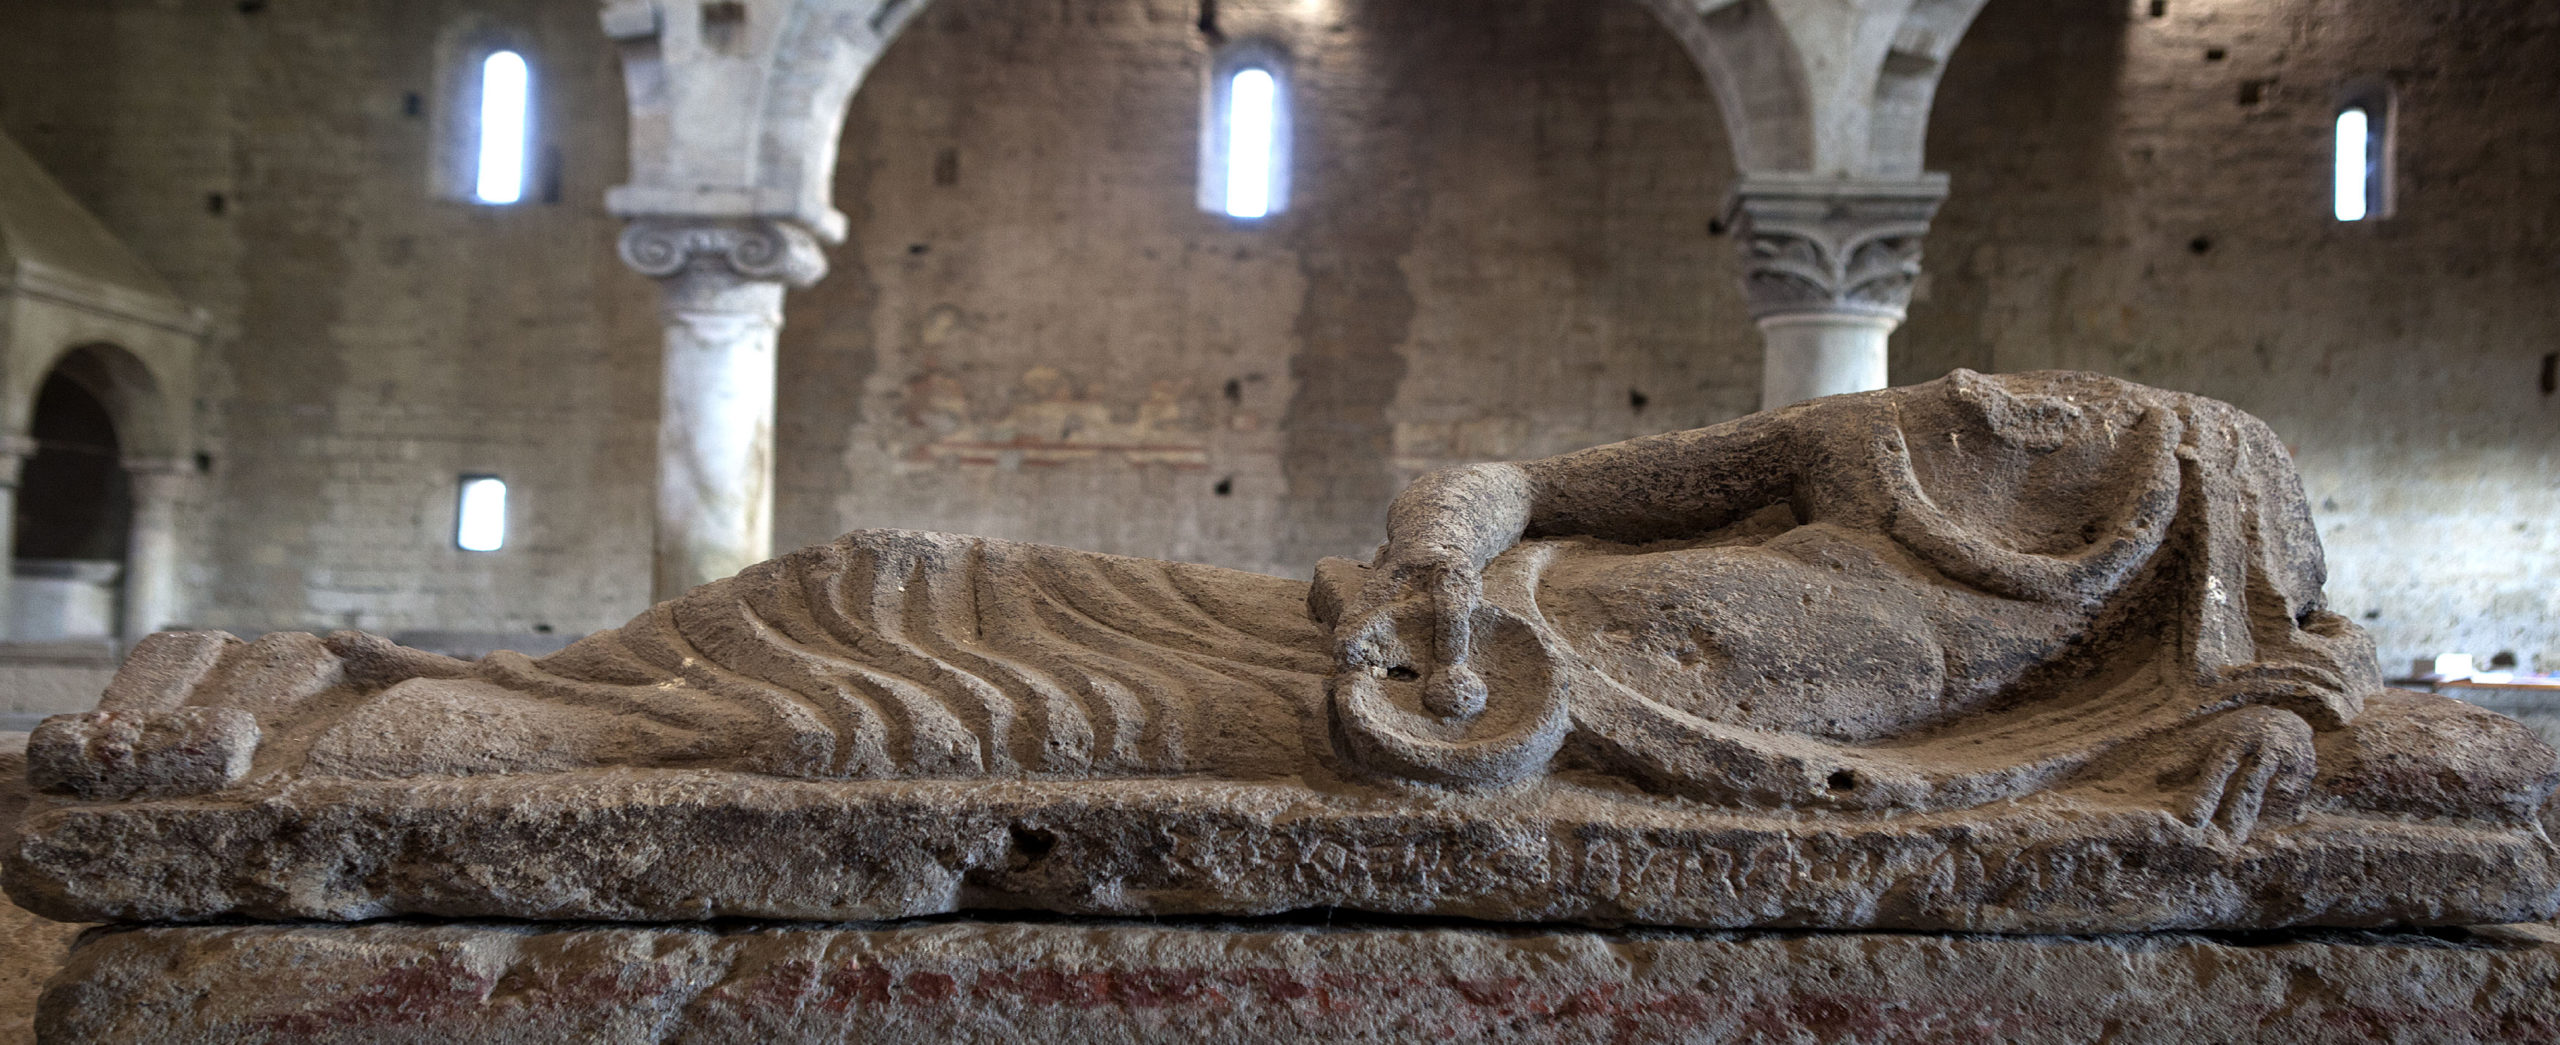 Tuscania sarcofago etrusco all'interno della chiesa di San Pietro